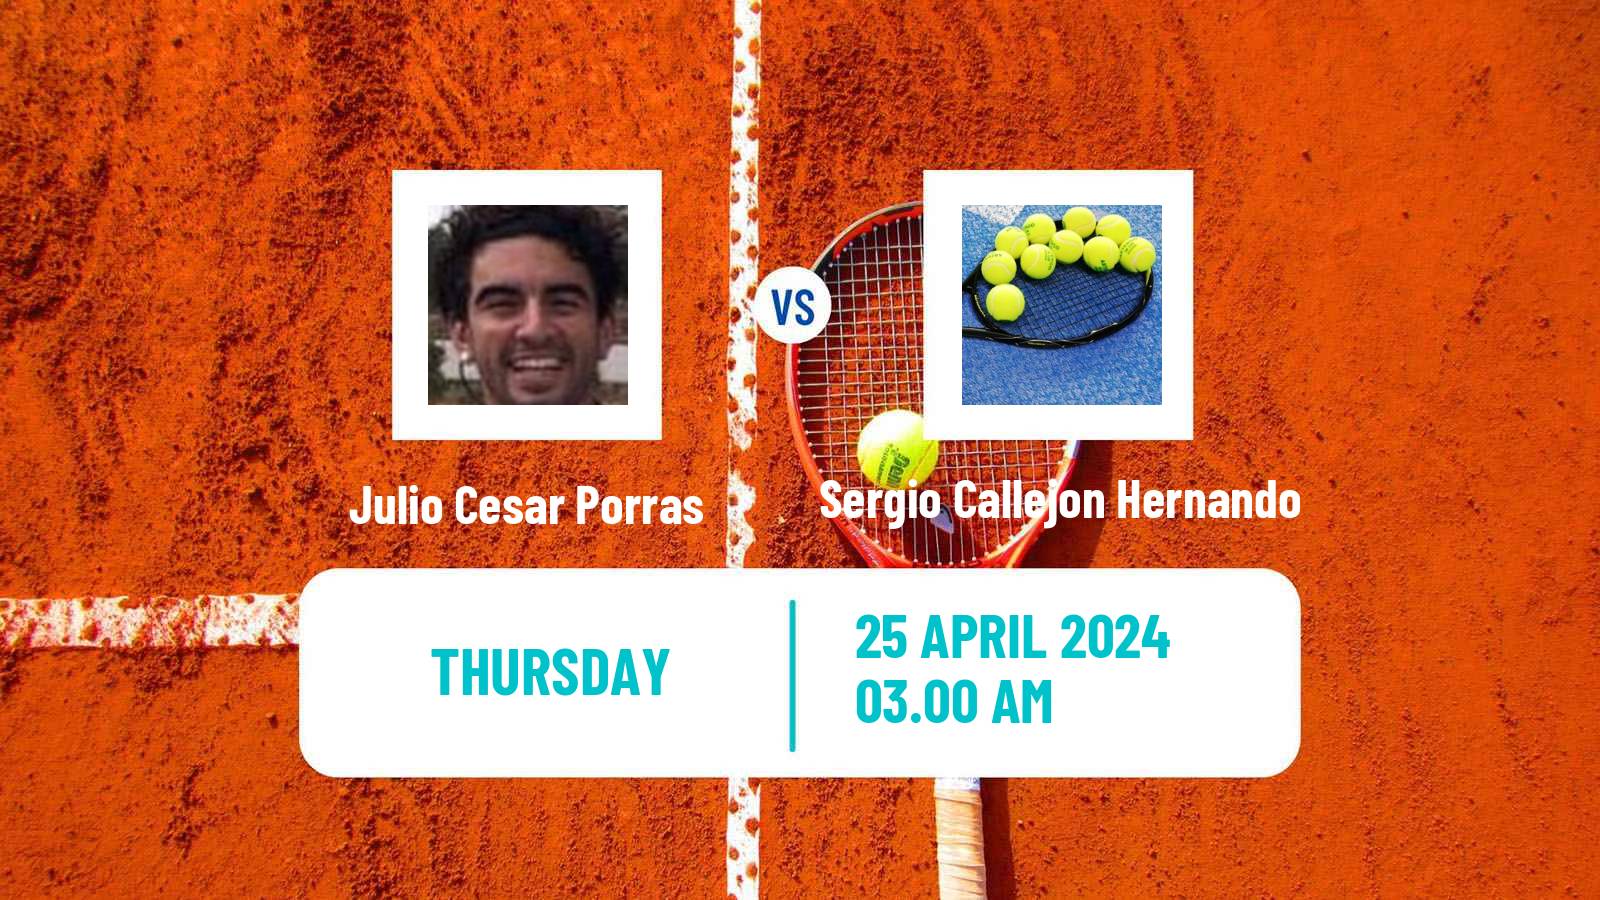 Tennis ITF M15 Sanxenxo Men Julio Cesar Porras - Sergio Callejon Hernando